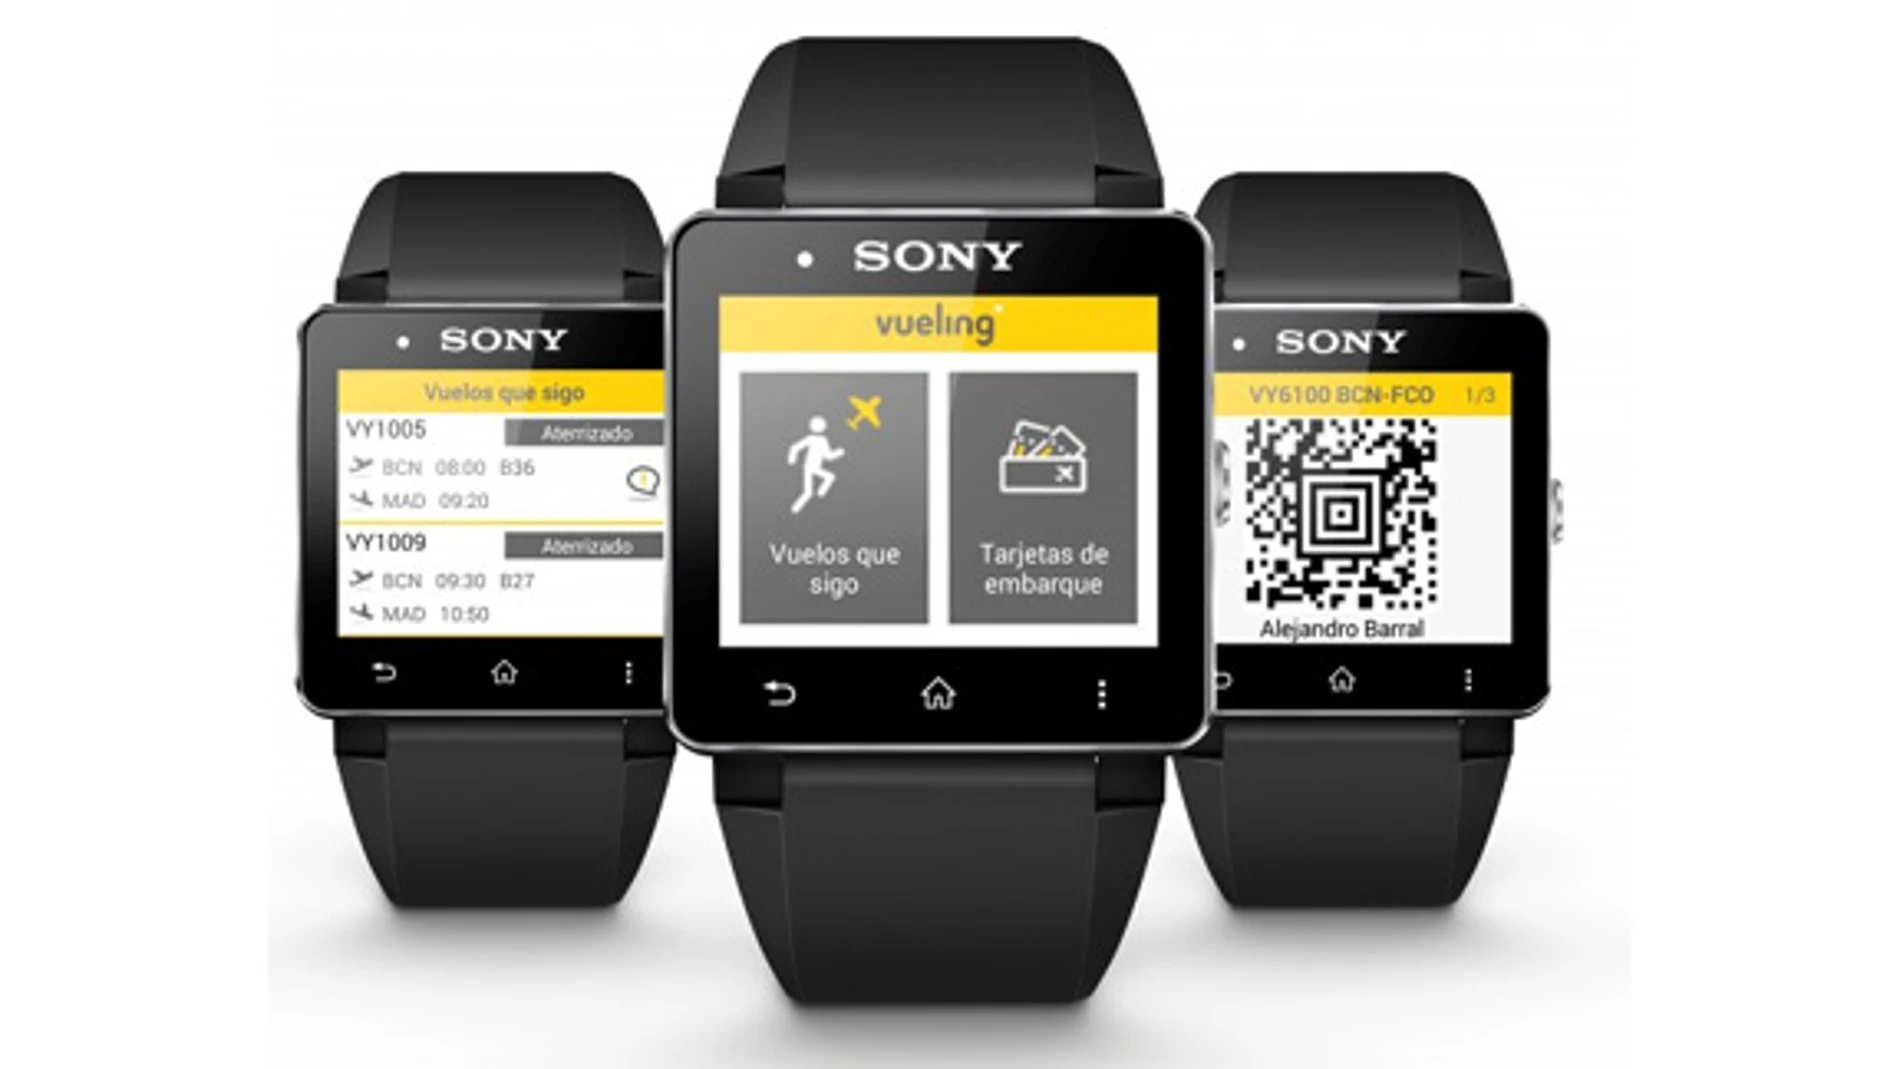 Sony y Vueling se unen para crear la primera tarjeta de embarque para relojes inteligentes